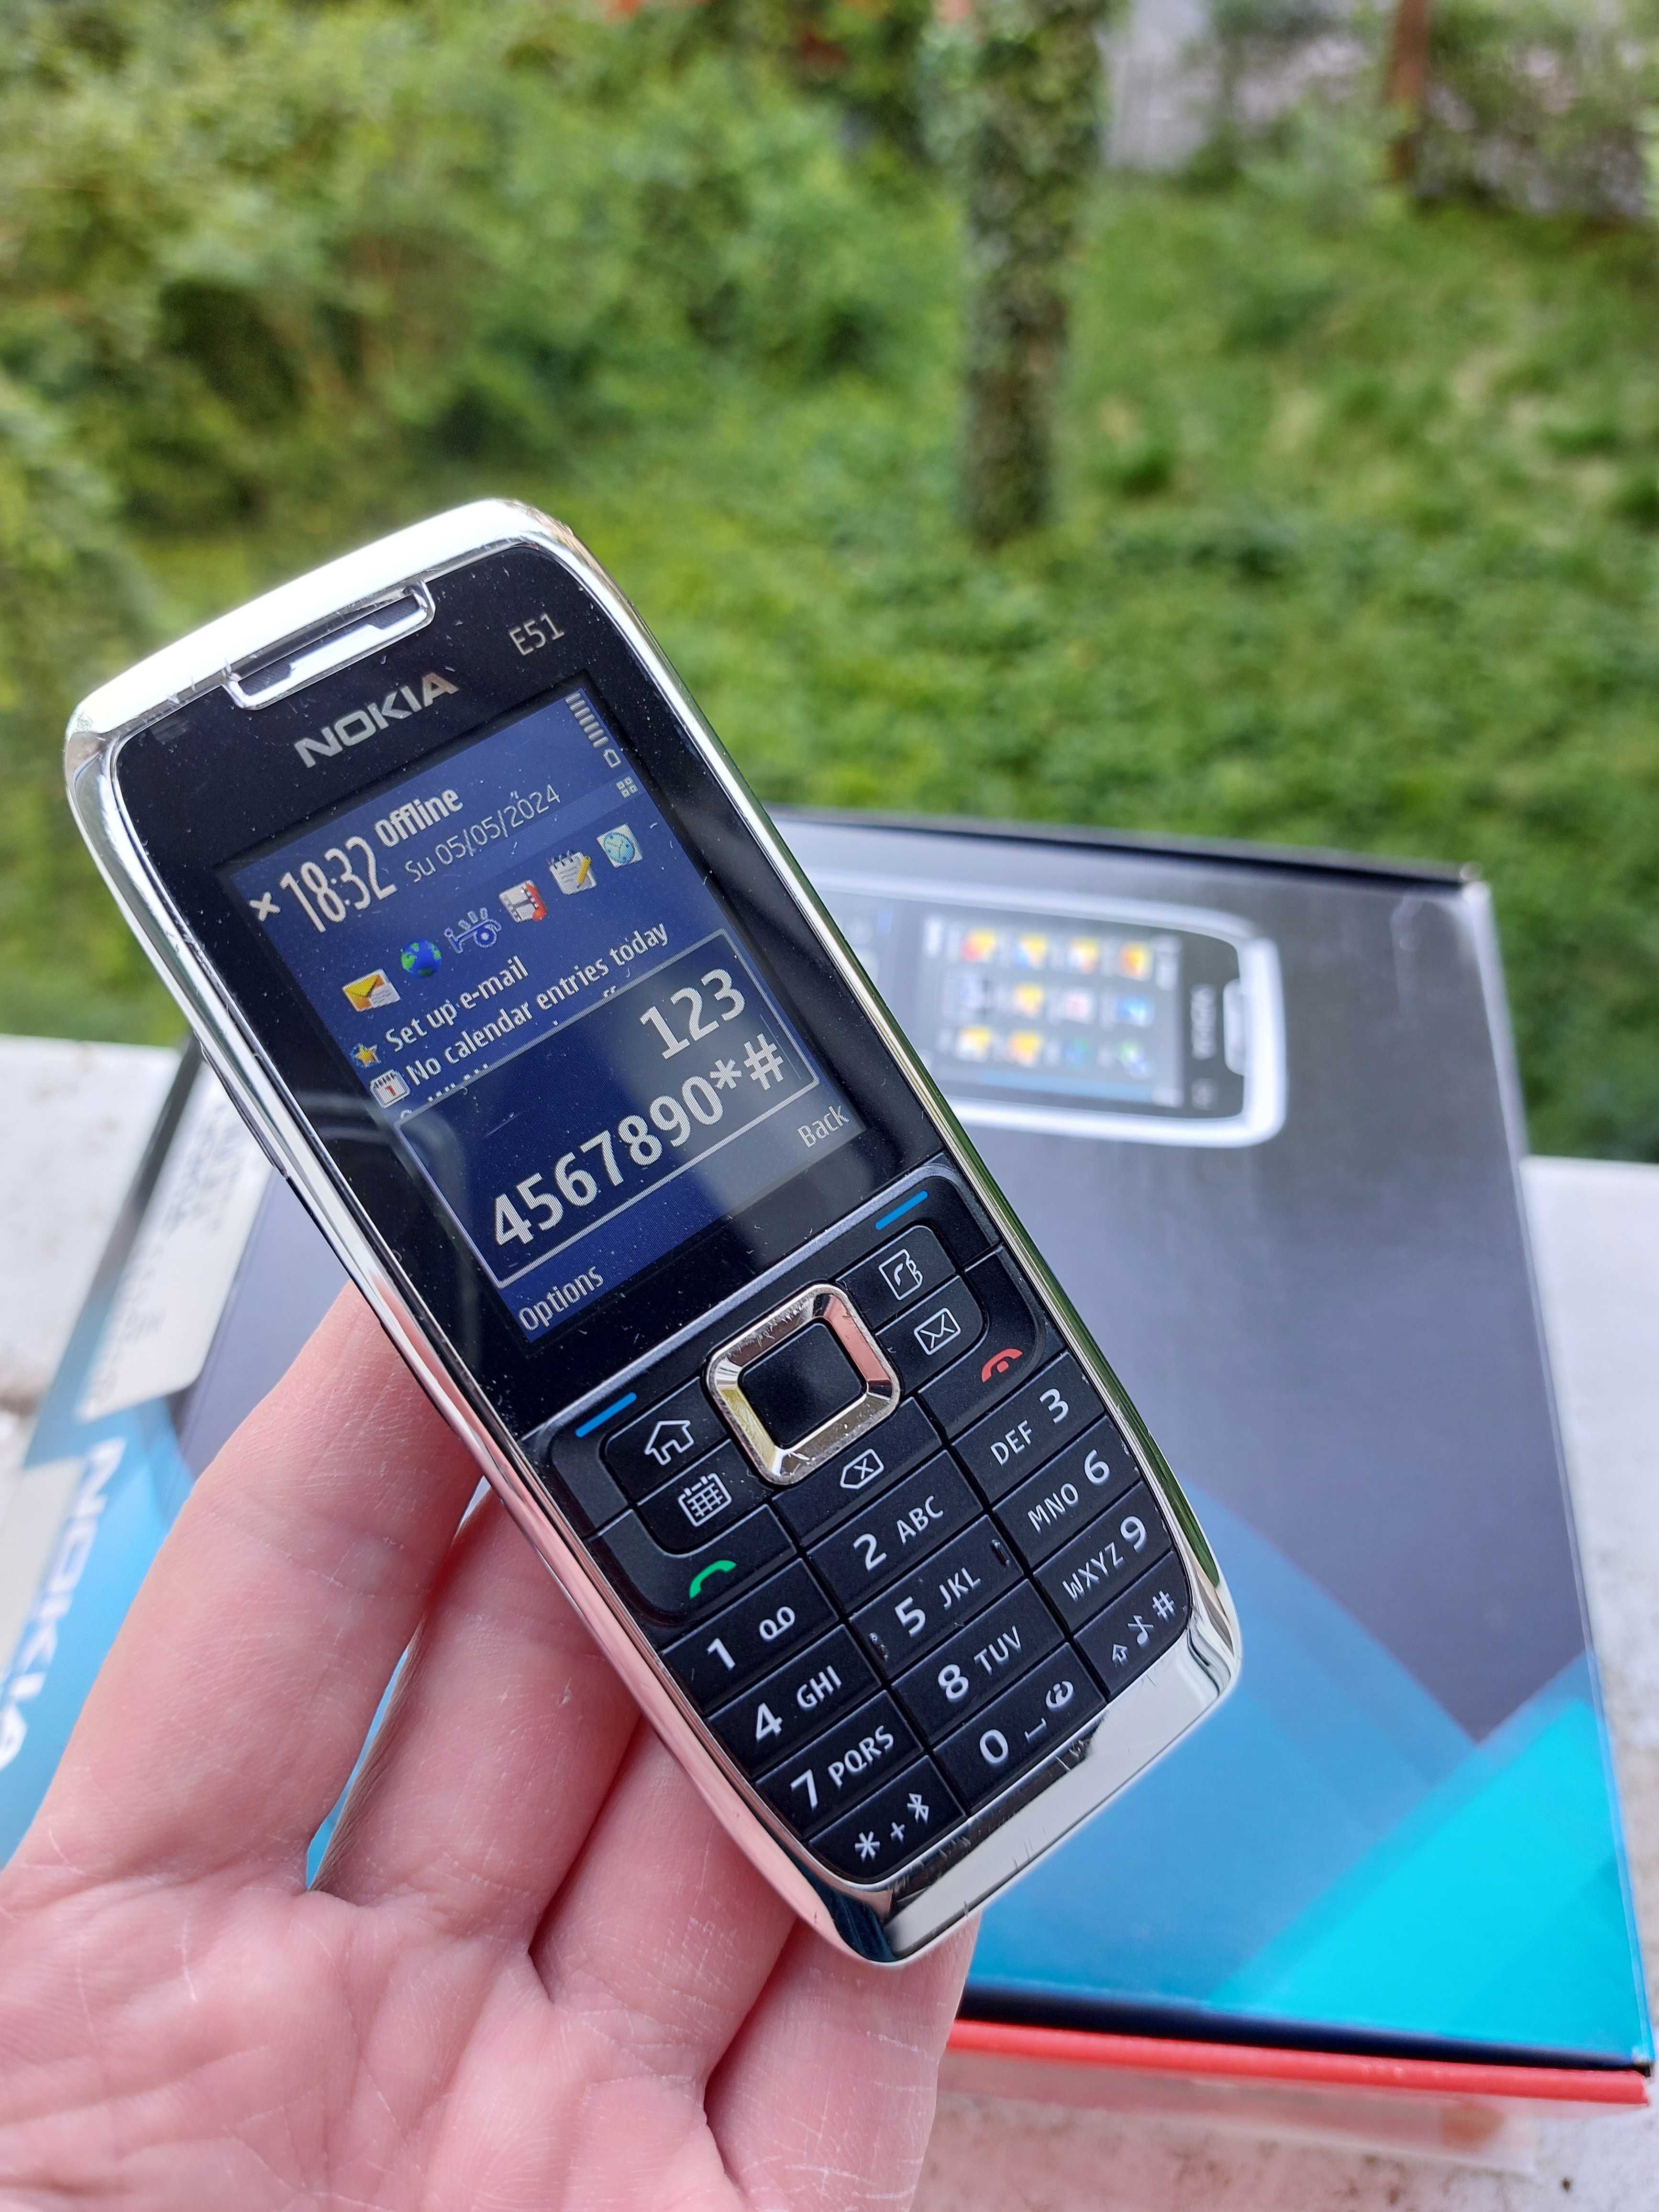 Nokia e51 orig. Finlanda decodat la cutie cu accesorii stare f buna